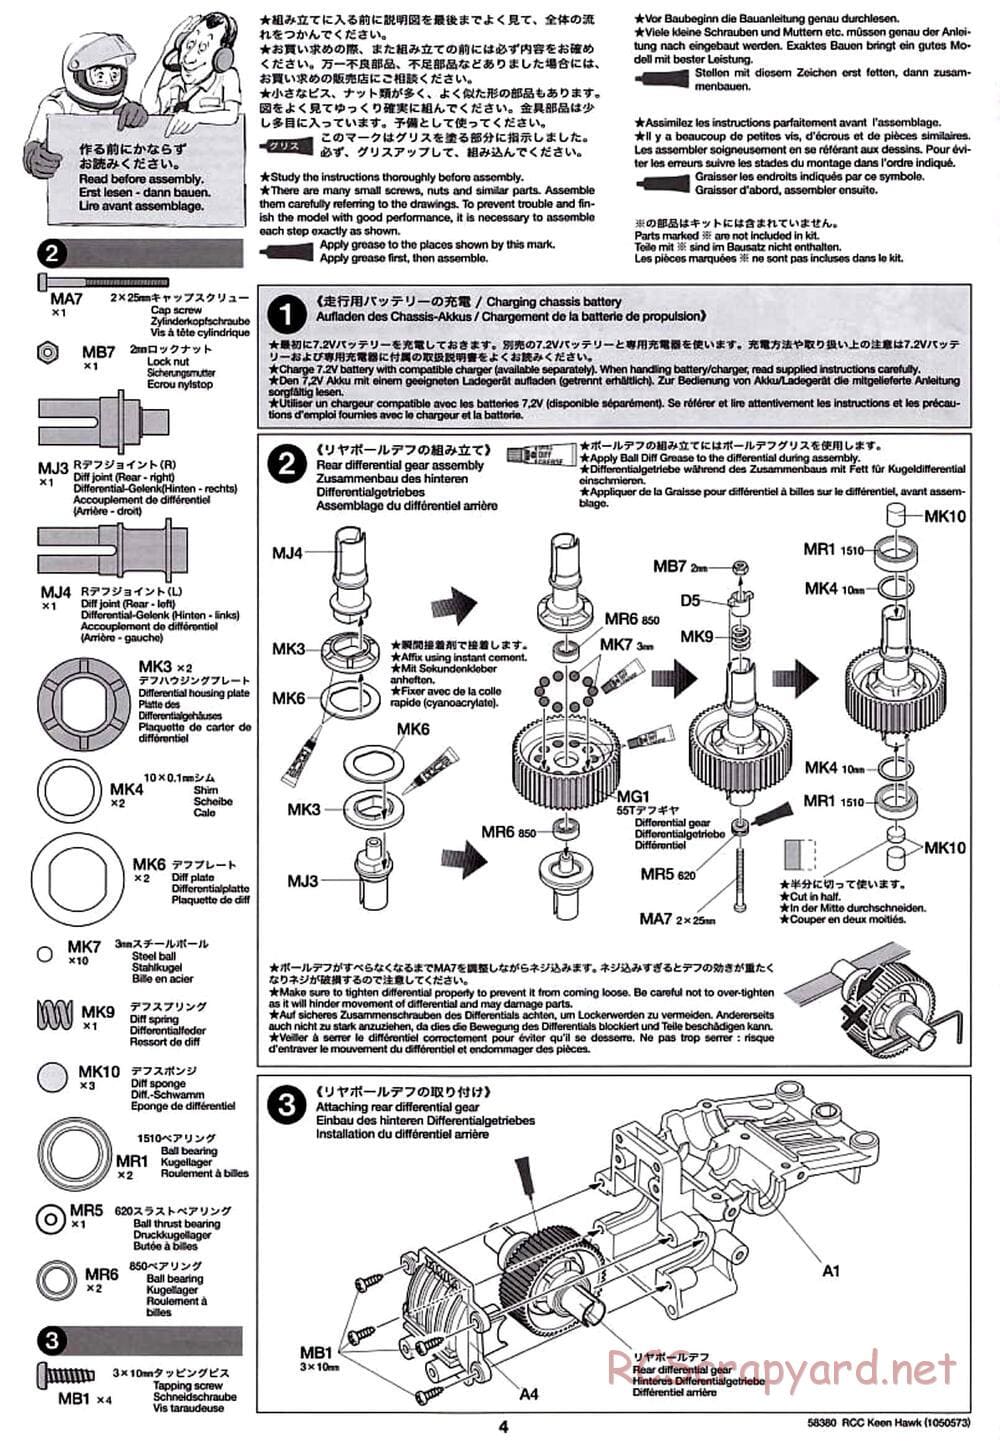 Tamiya - Keen Hawk Chassis - Manual - Page 4